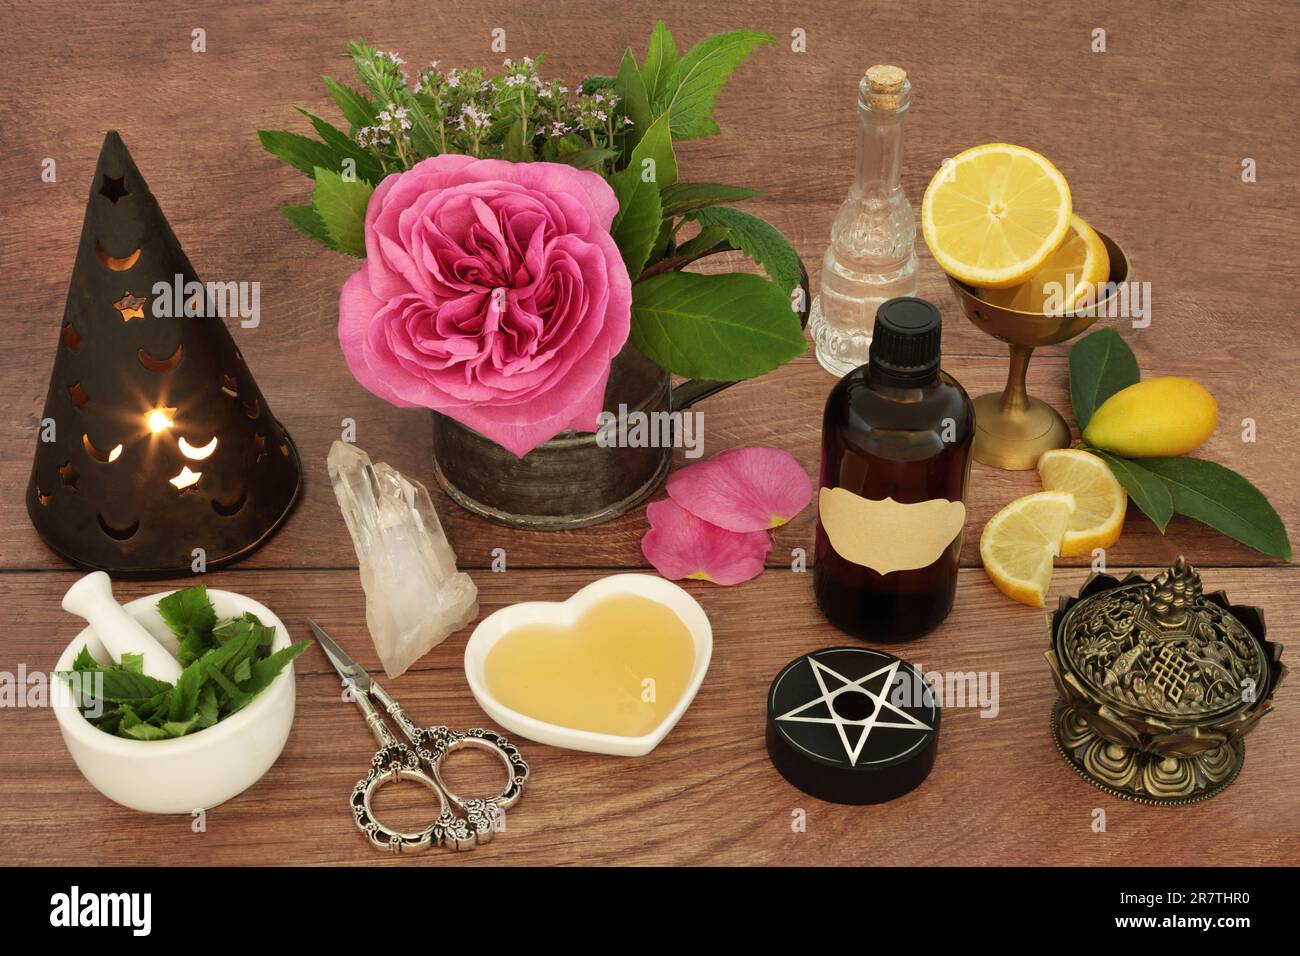 Préparation de potion d'amour pour le charme magique avec des ingrédients de fleur de rose, thym, menthe, fruit de citron et miel. Concept ésotérique de la divination occulte. Banque D'Images